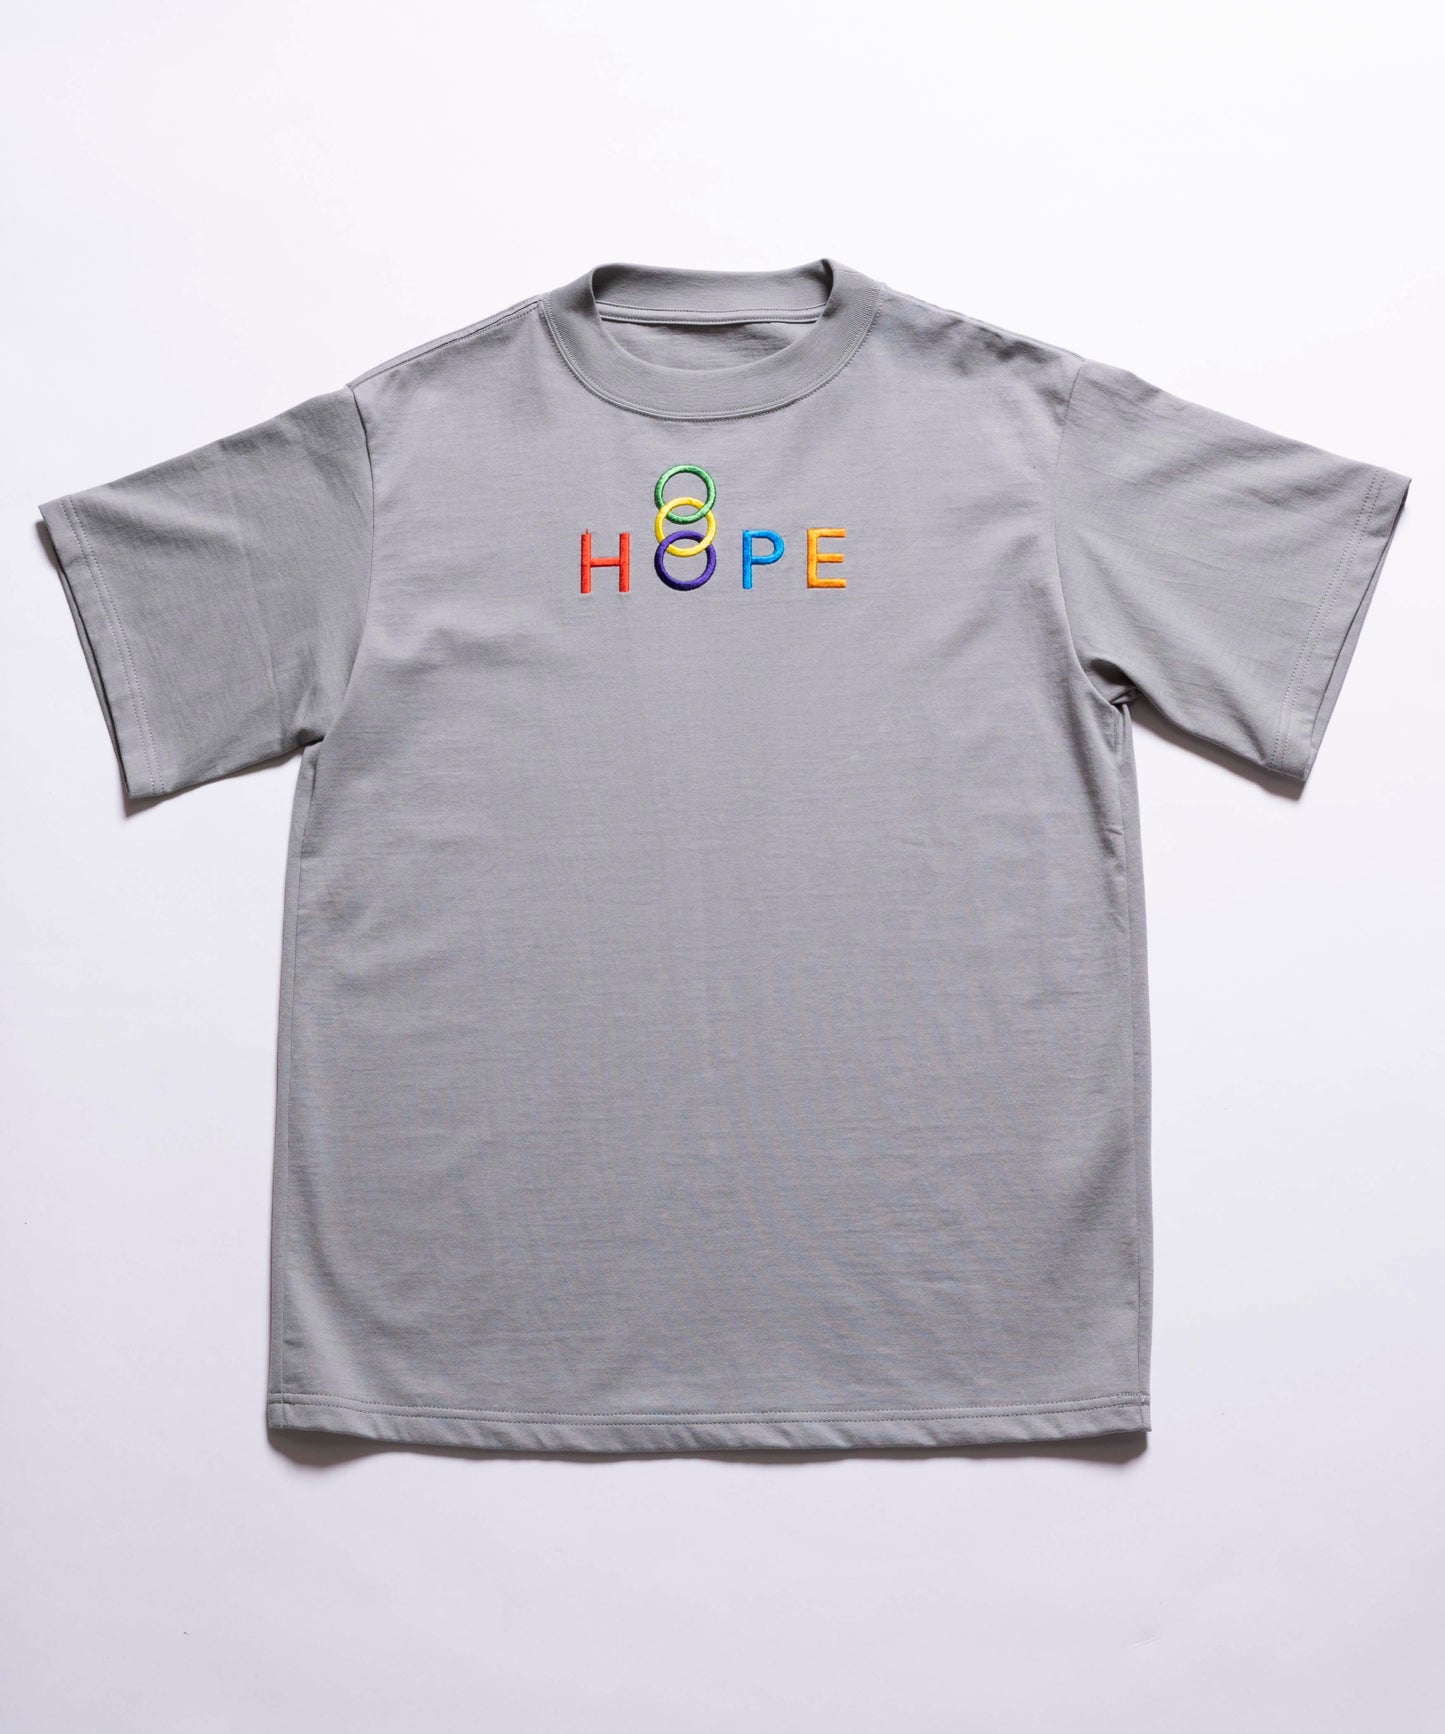 HOPE T-SHIRT / GRAY